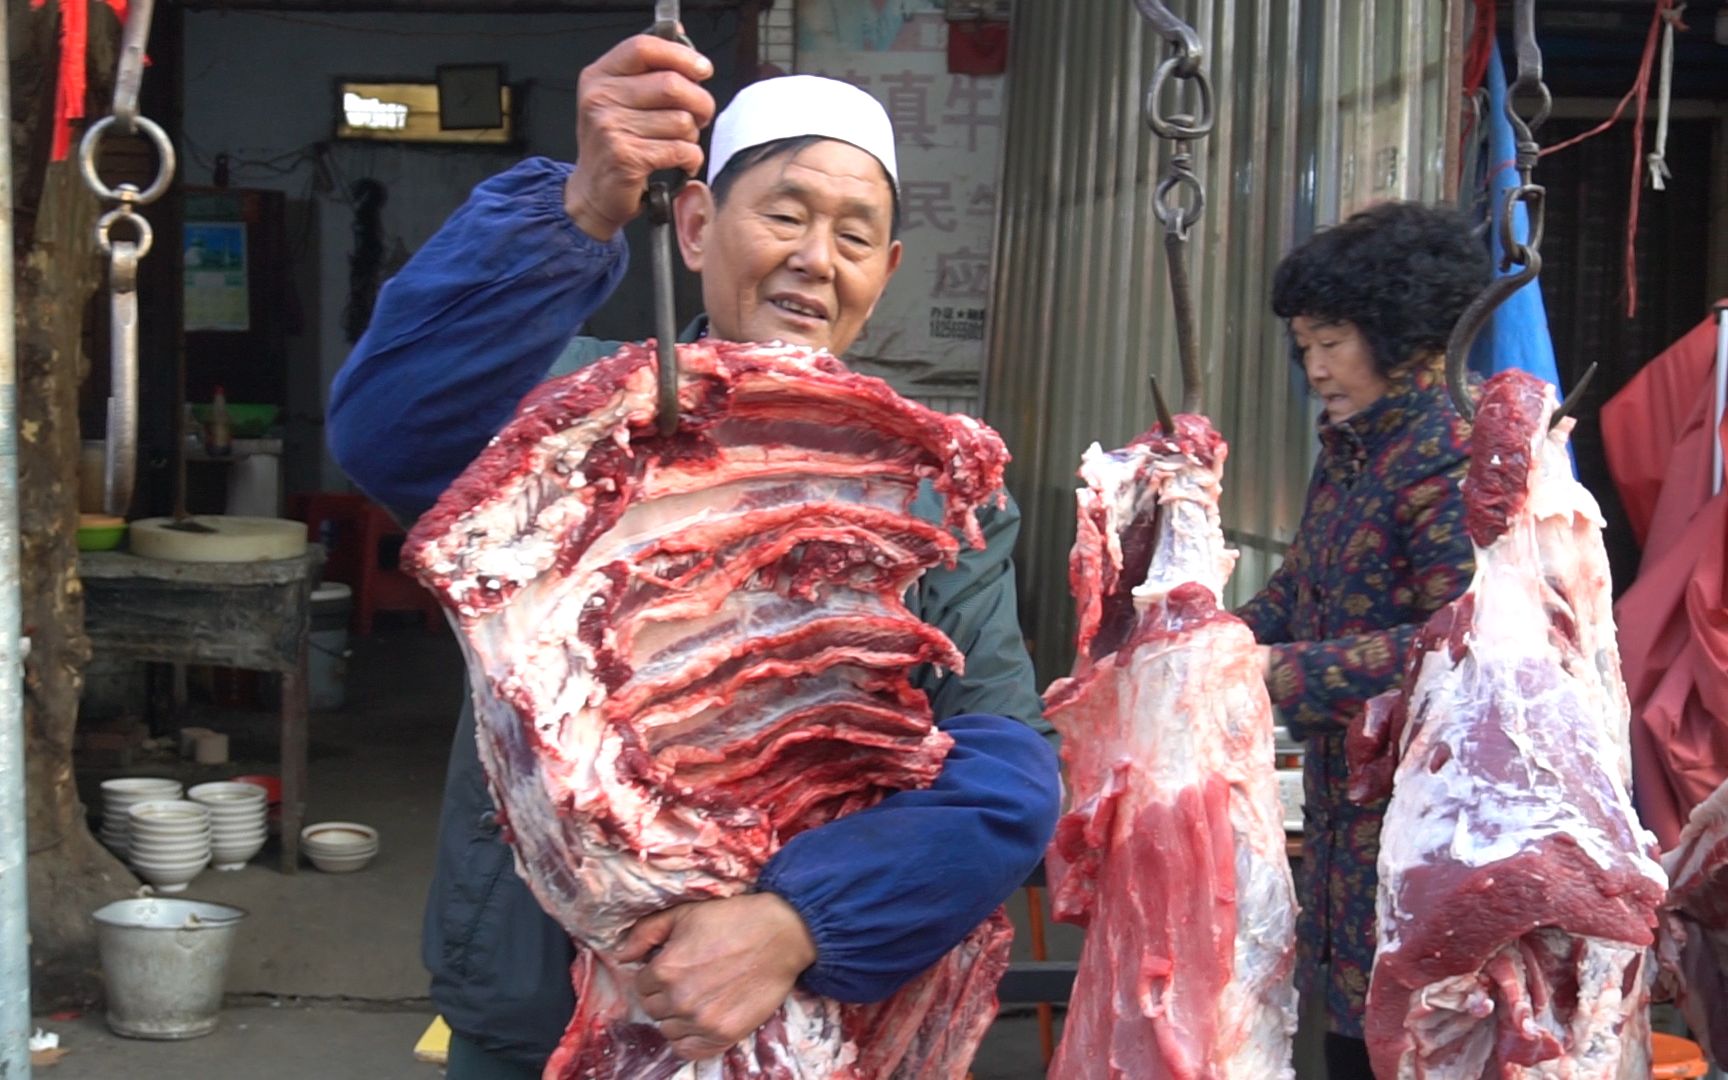 安徽淮南,七十岁大叔摆摊卖牛肉汤,8块钱一碗顾客就着一斤白酒